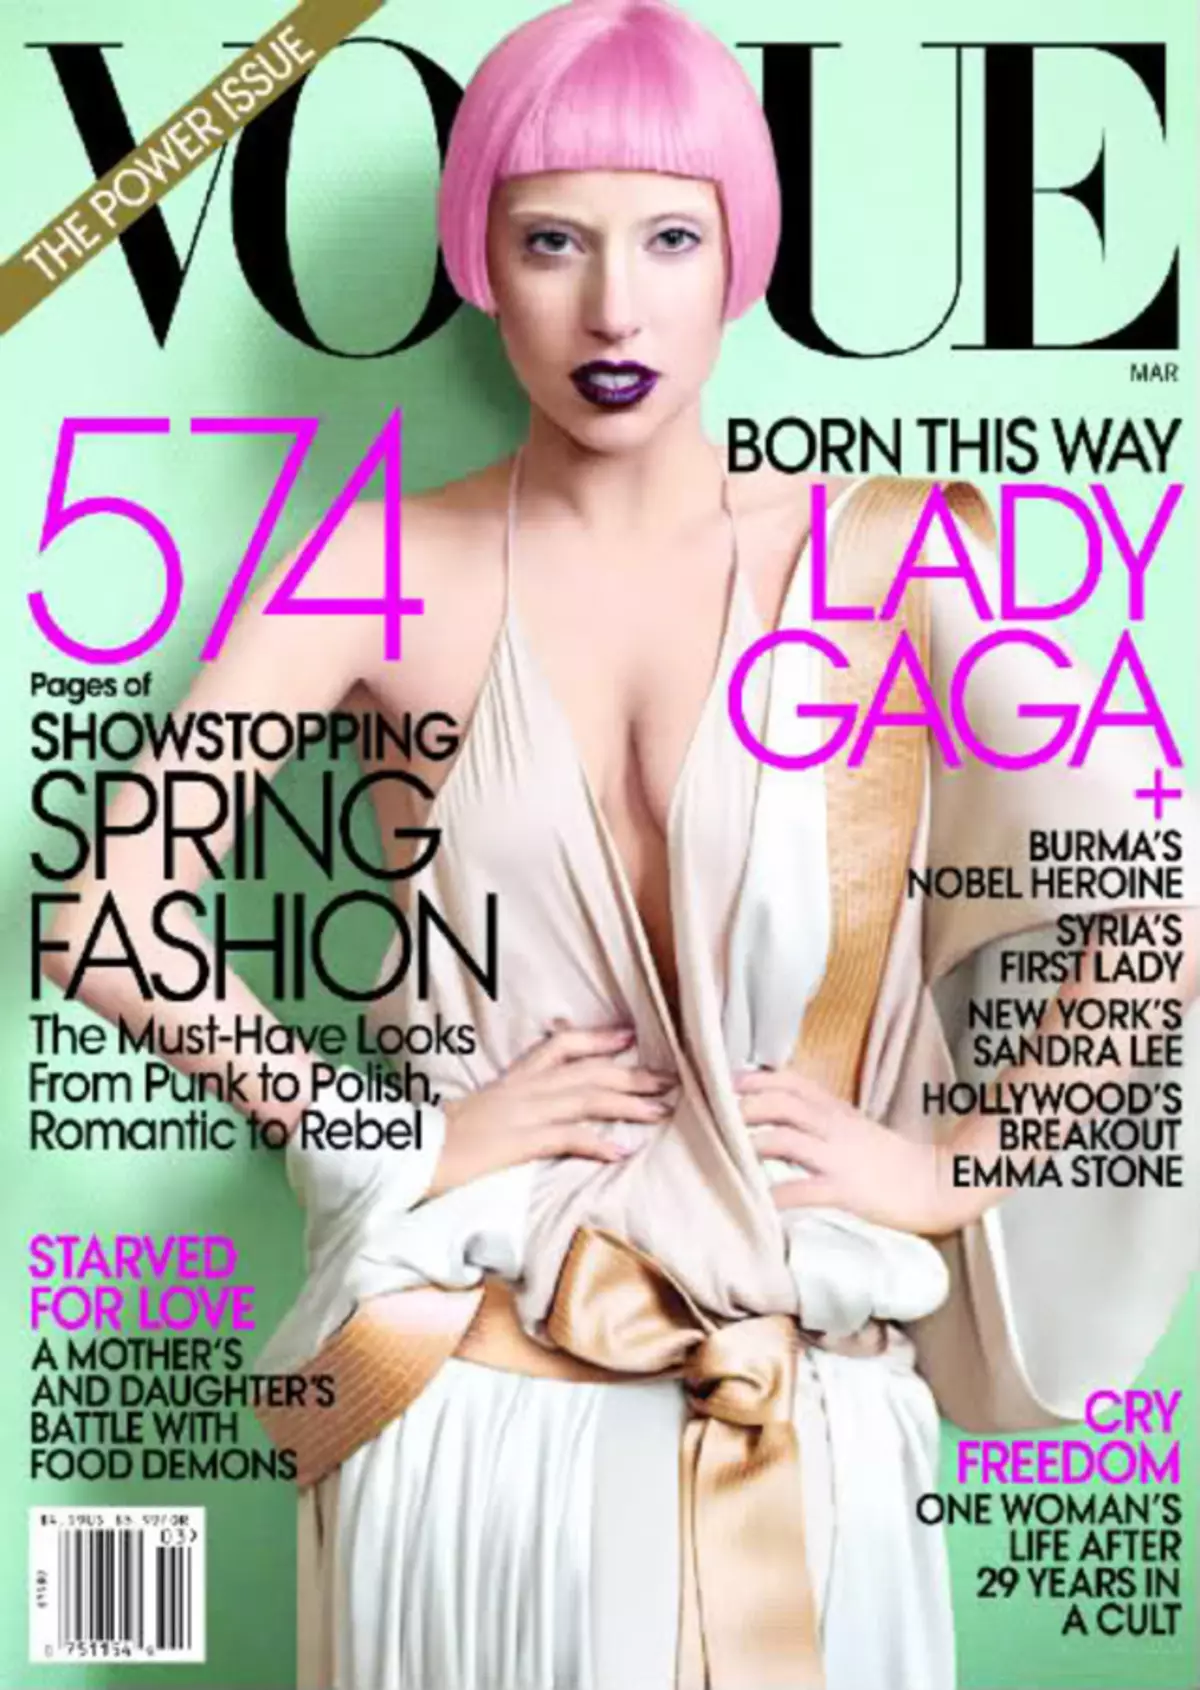 Interview Lady Gaga in Vogue Magazine